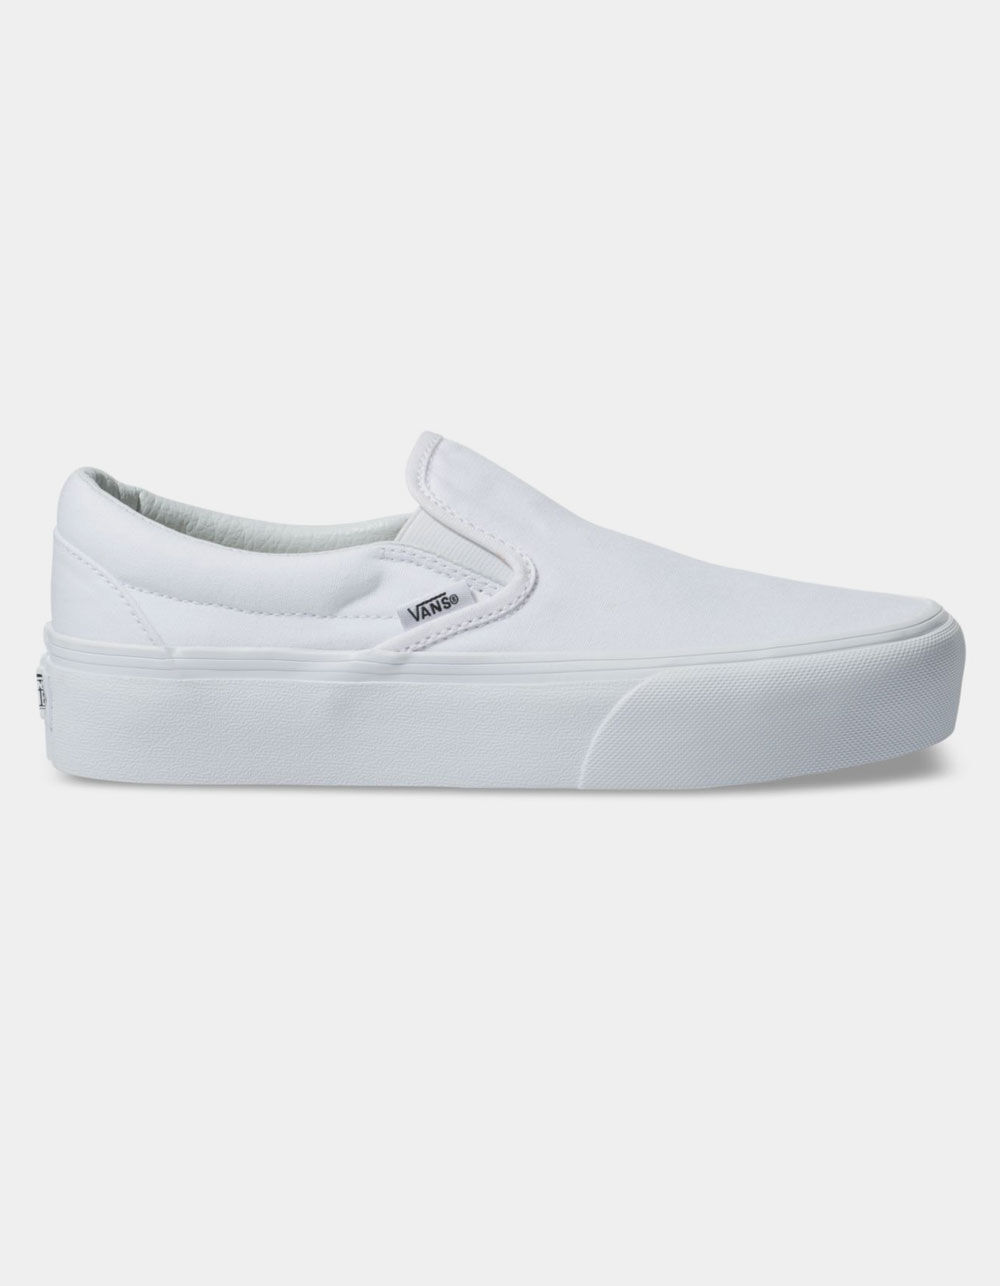 VANS Classic Slip-On Platform True White Womens Shoes - TRUE WHITE | Tillys